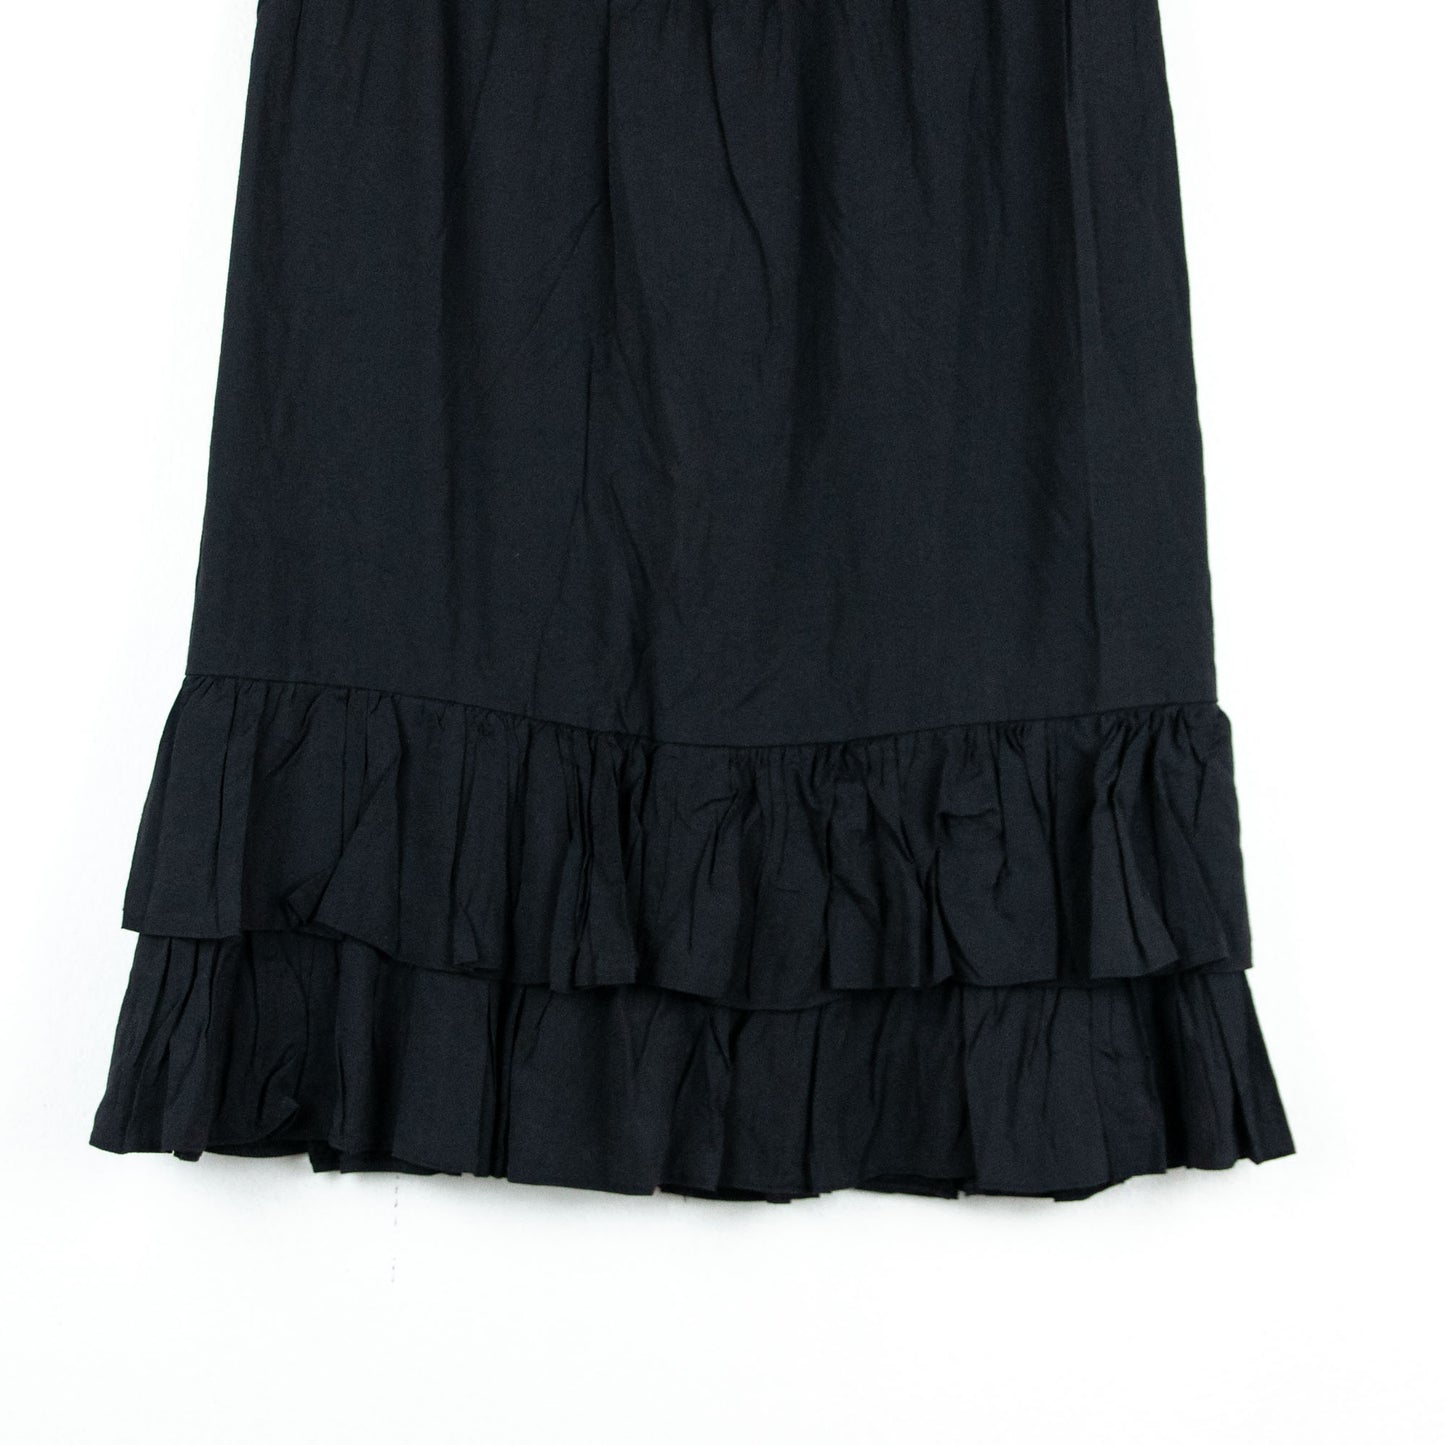 VIN-SKI-16757 Vintage φούστα μαύρη L